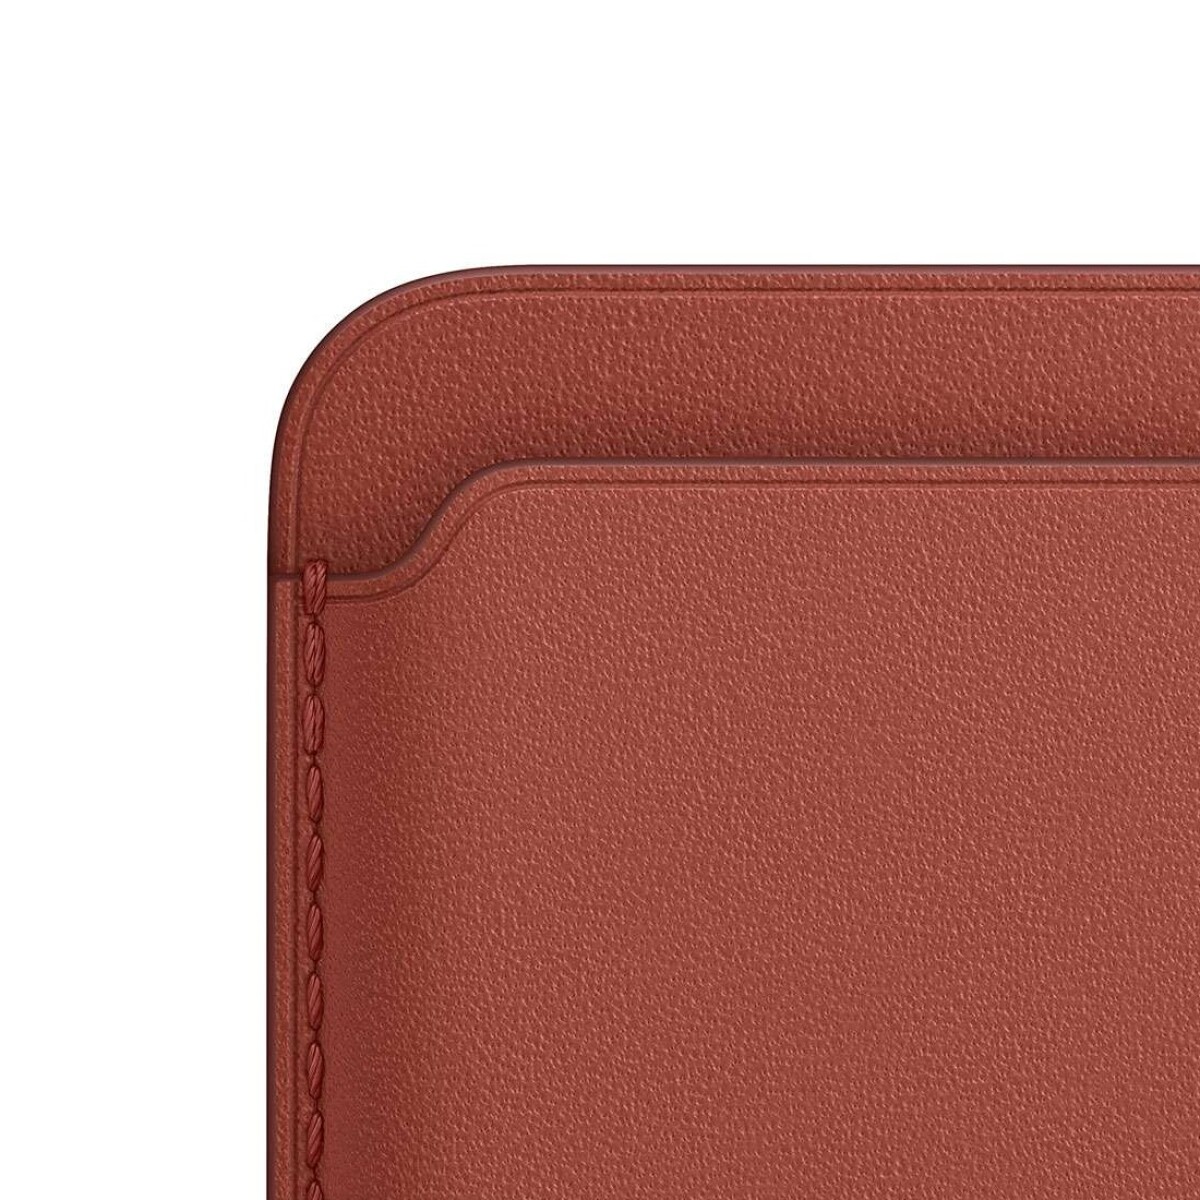 Apple wallet de cuero con magsafe para iphone | original Arizona